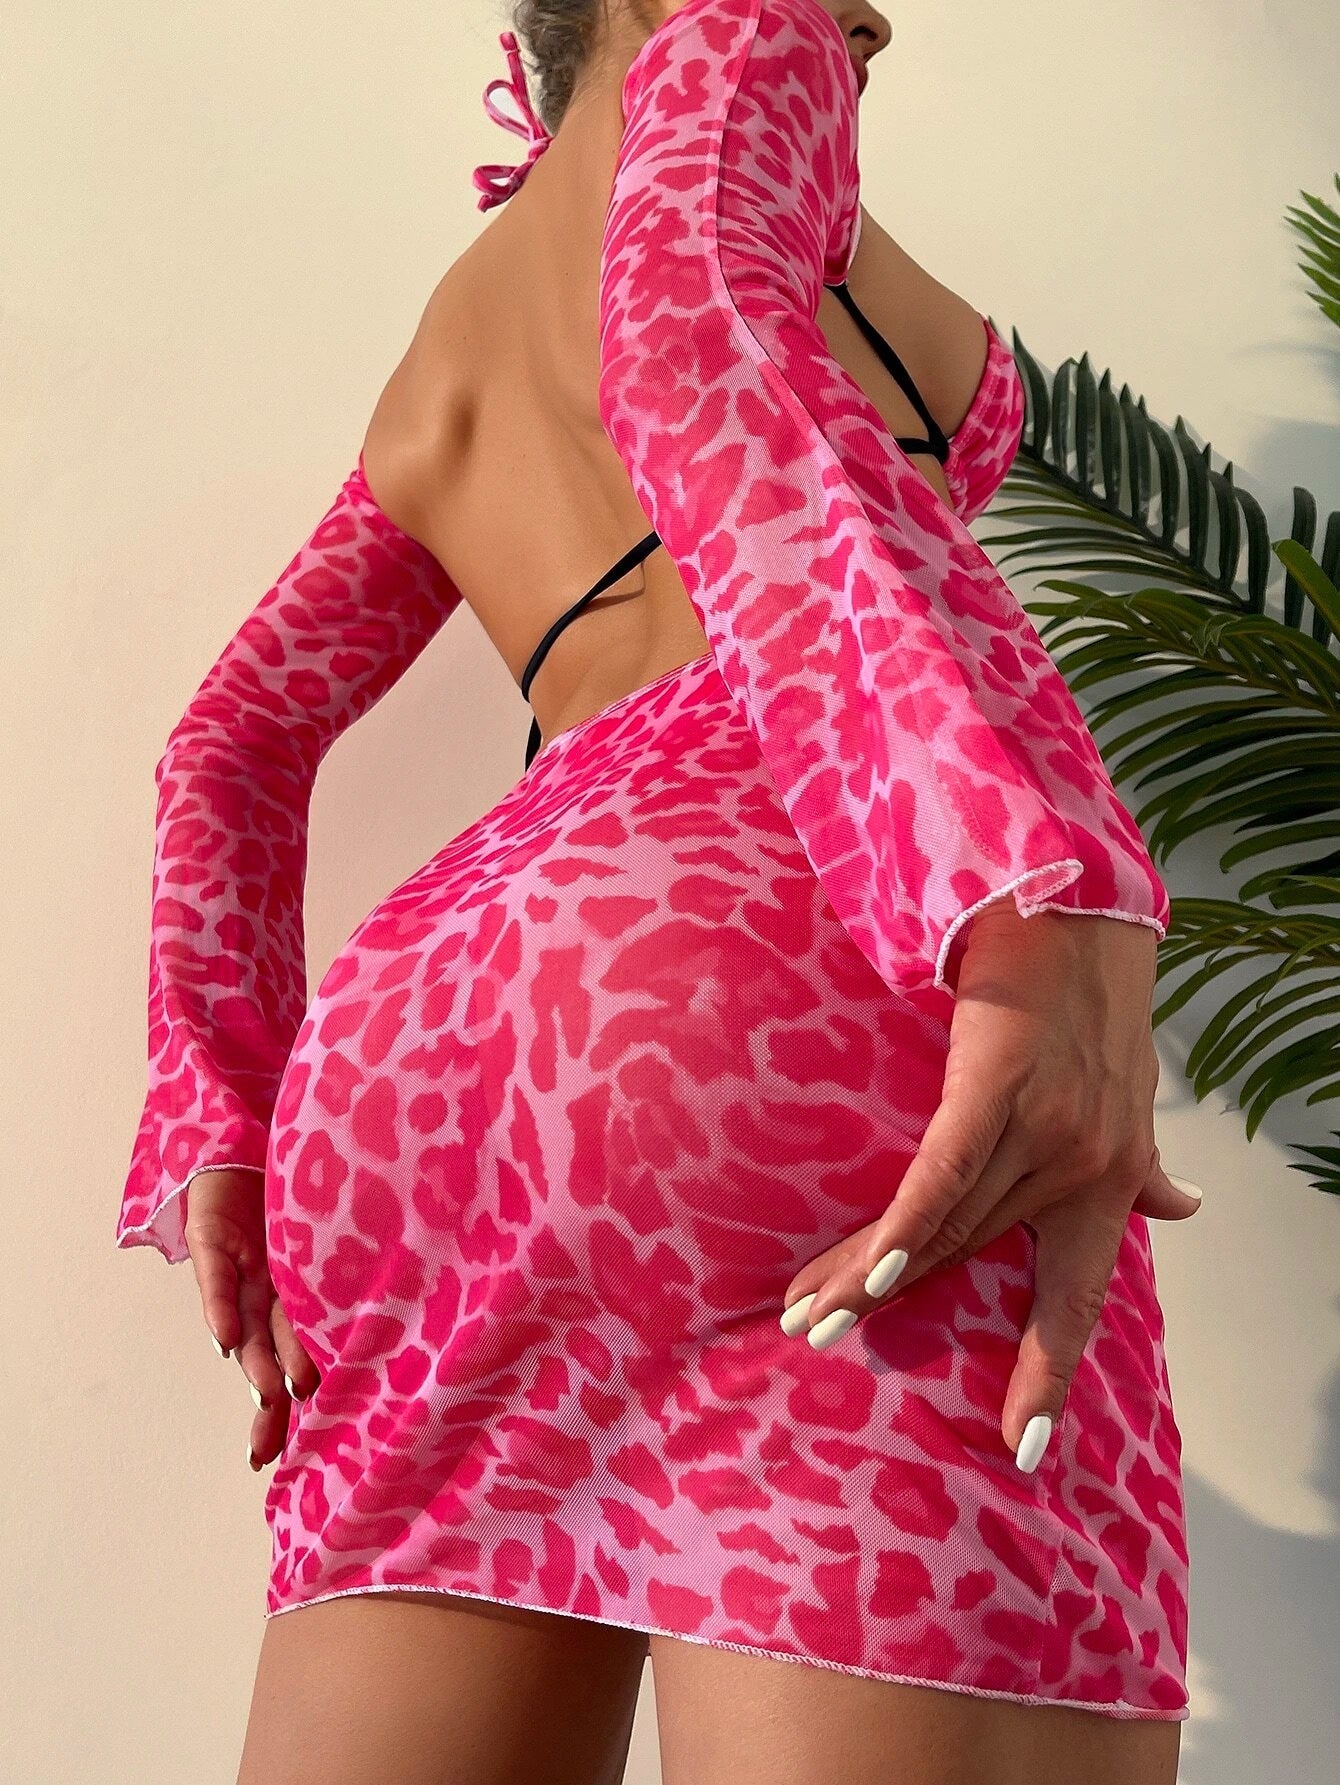 Aisha Leopard Tie Halter Bikini Photo Set